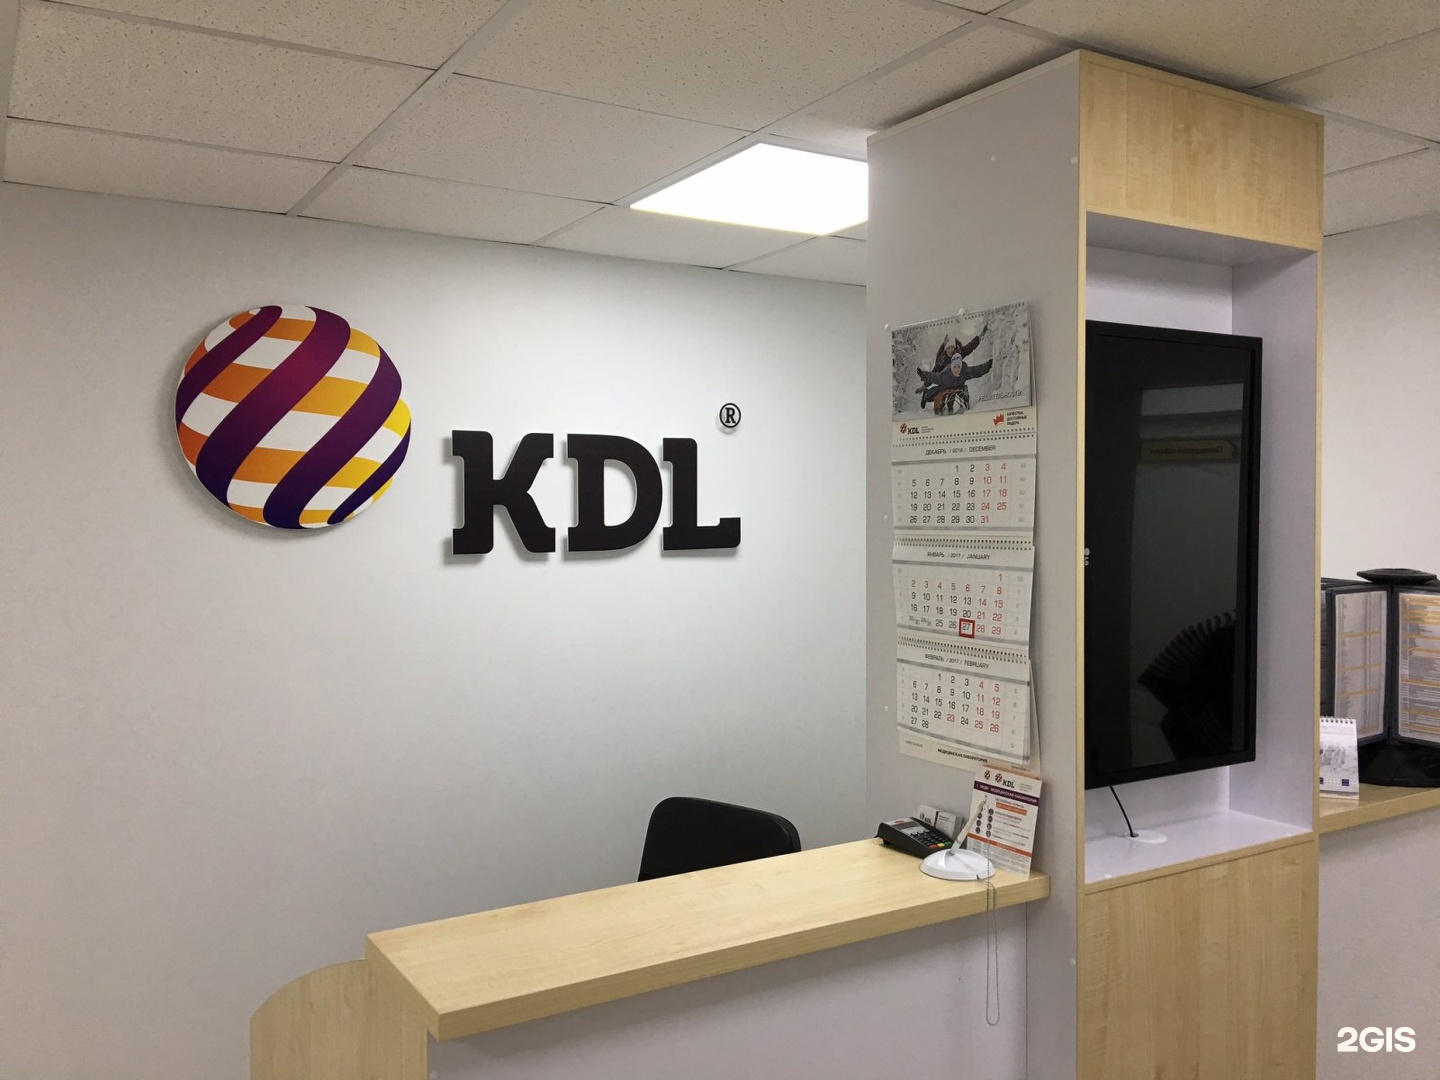 Кдл одинцово. КДЛ лаборатория Омск. KDL логотип. Эмблема КДЛ лаборатории. KDL В Омске.